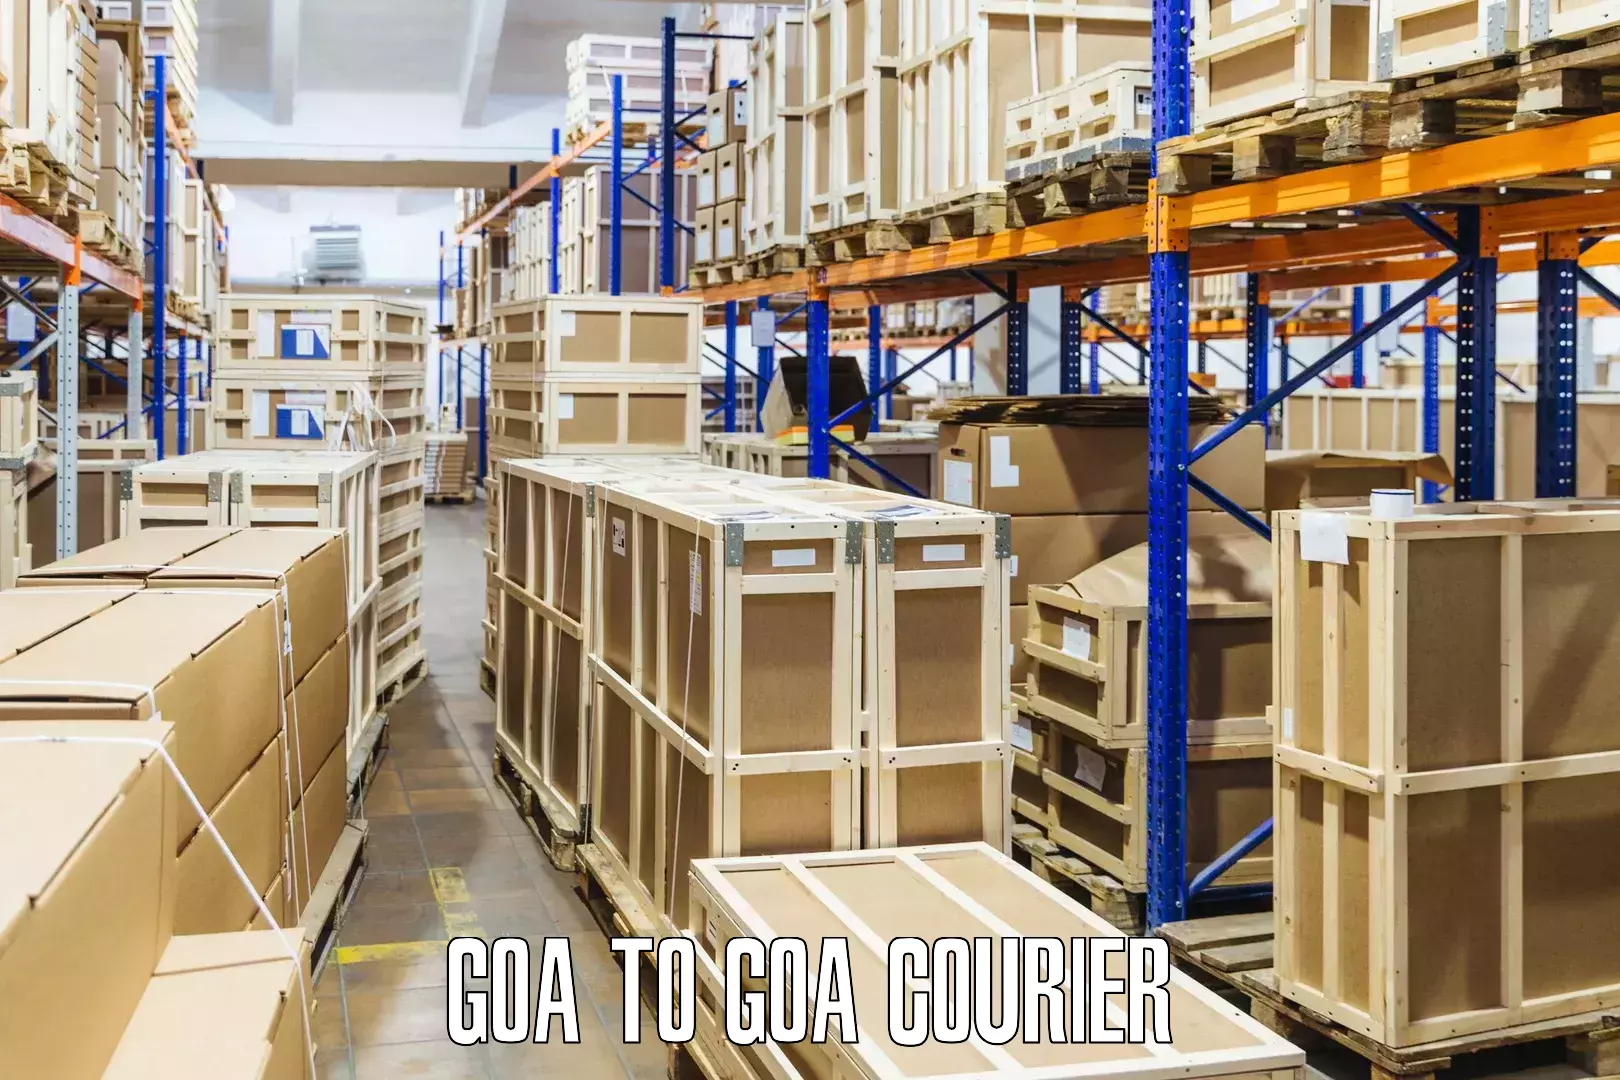 Efficient parcel tracking Goa to Goa